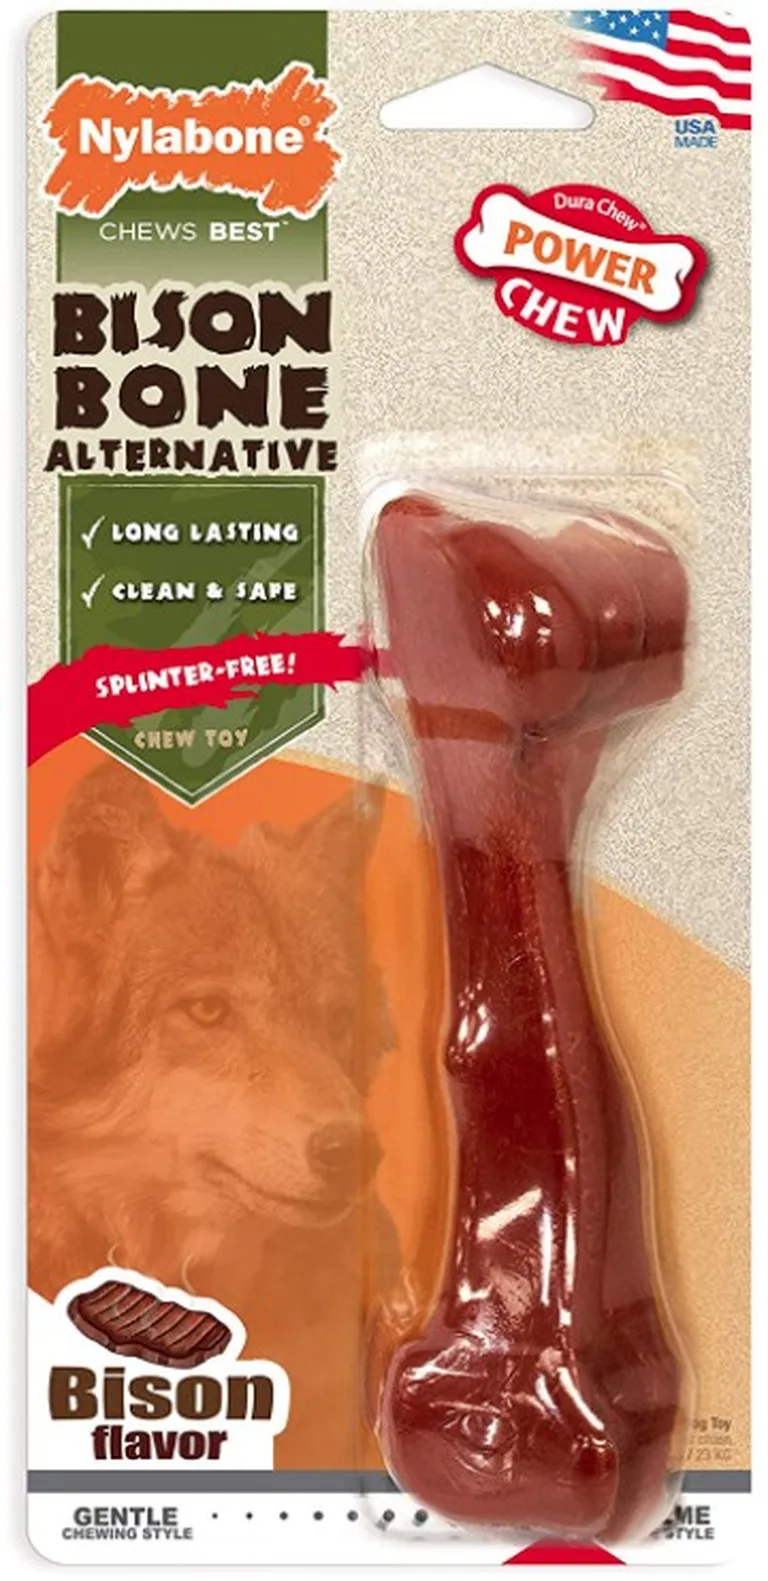 Nylabone Power Chew Bison Bone Alternative Dog Chew Toy Beef Flavor Photo 1